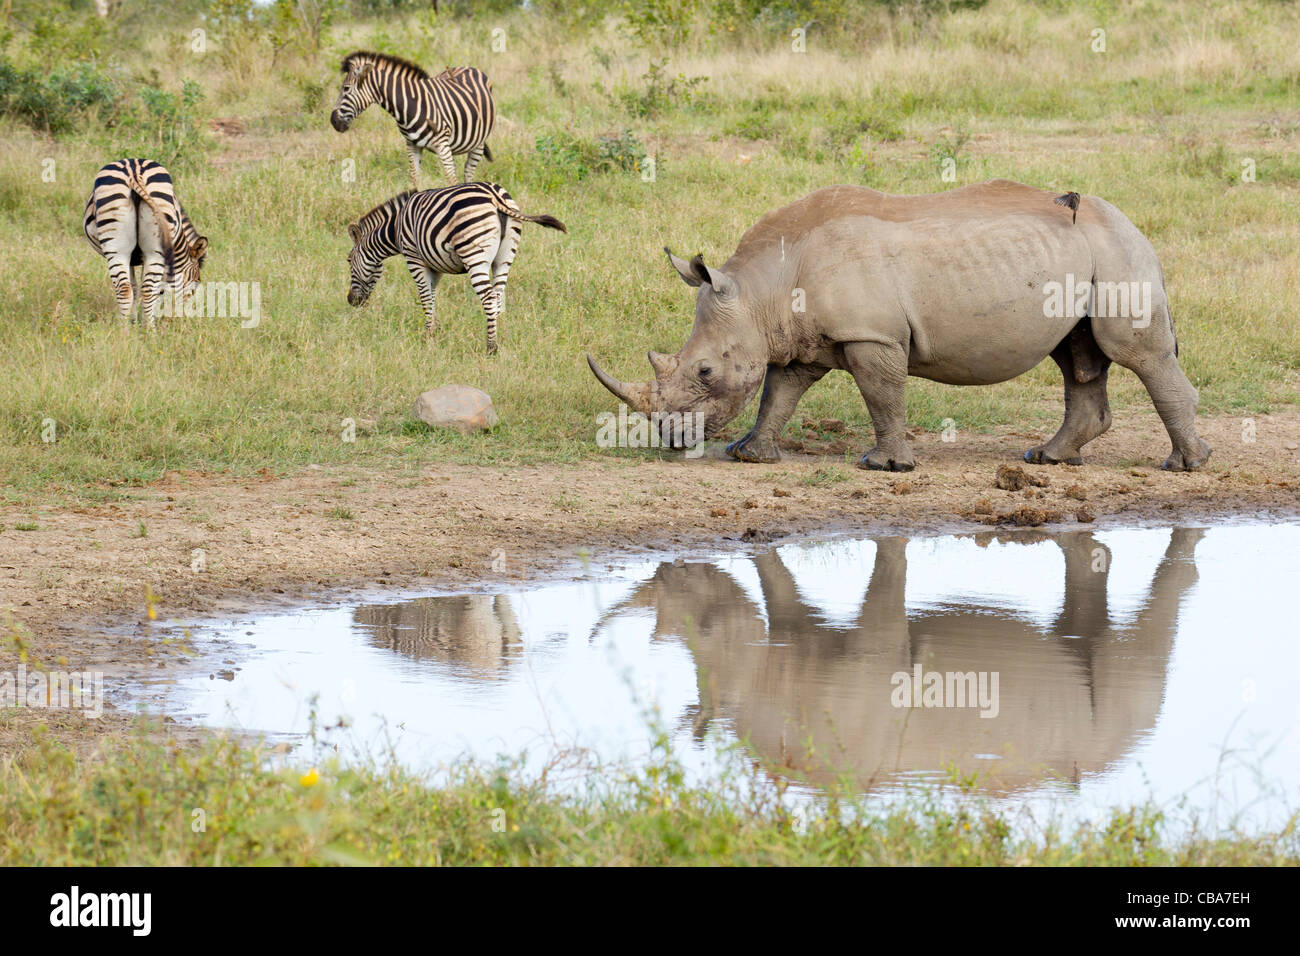 White Rhinoceros at dam with Zebra (Ceratotherium simum) Stock Photo